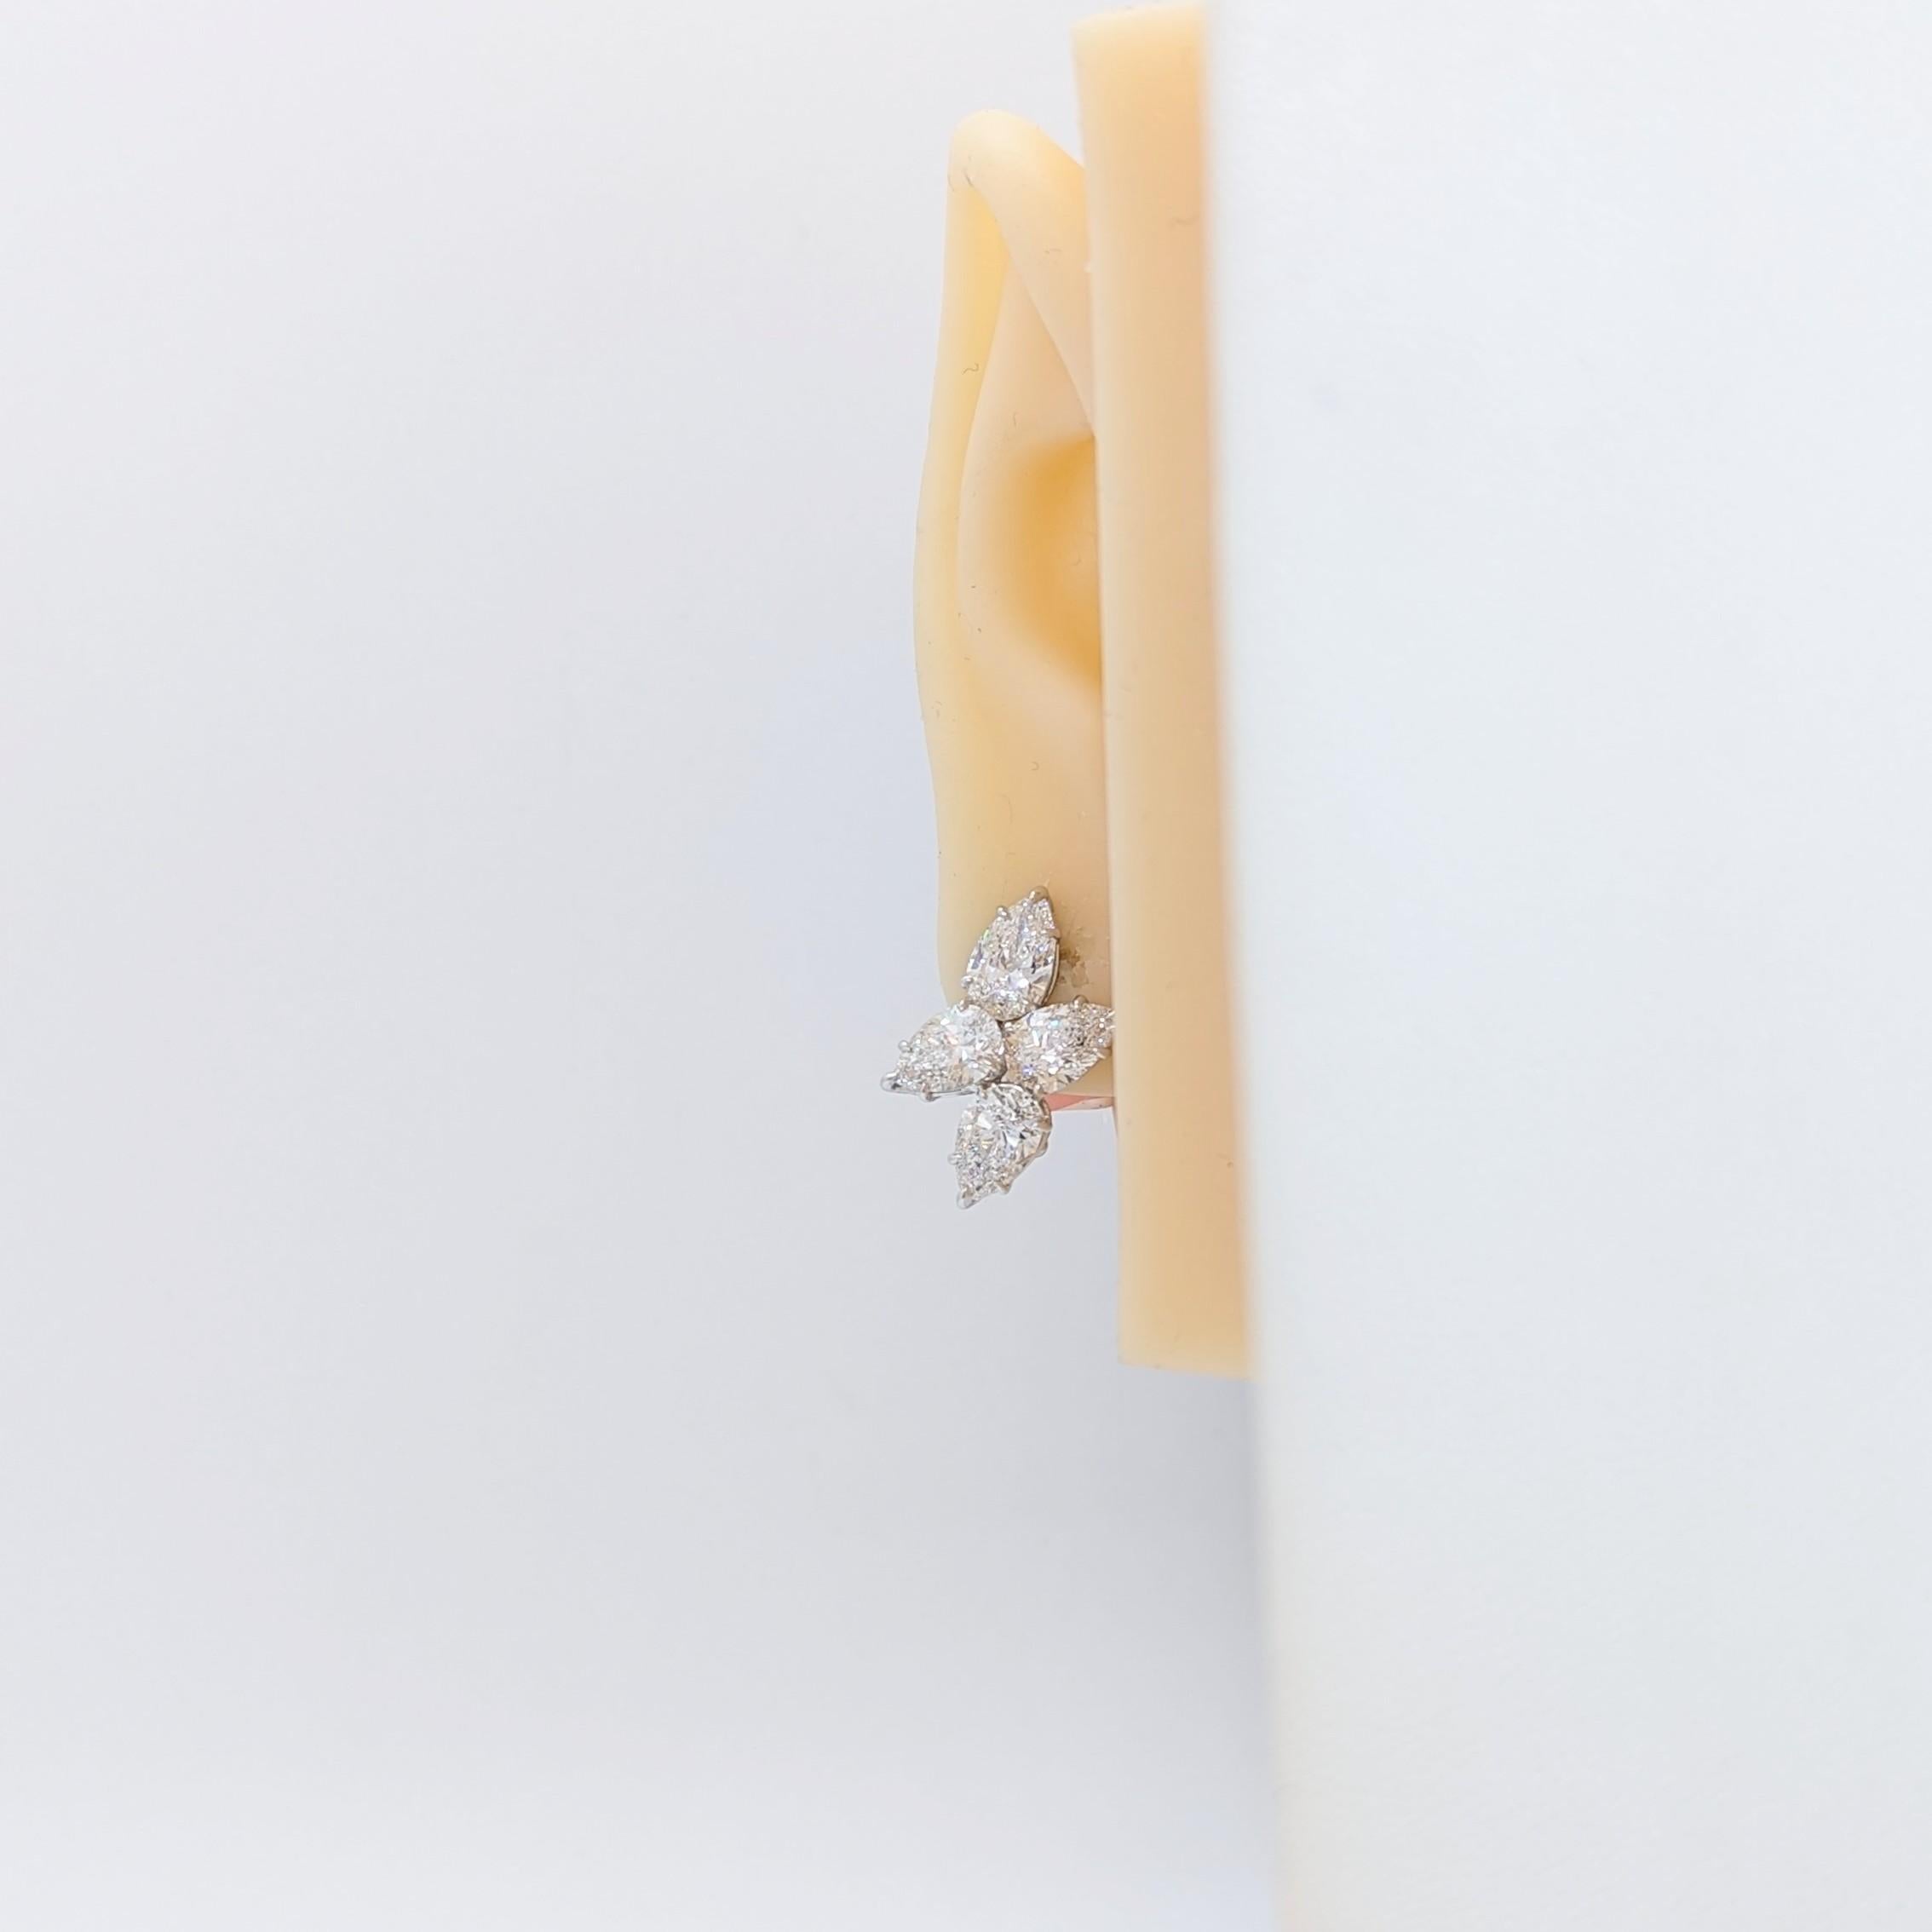 Magnifique 7.88 ct. DEF SI1-SI2 diamant blanc en forme de poire dans un design en grappe.  Fabriqué à la main en or blanc 18 carats.  